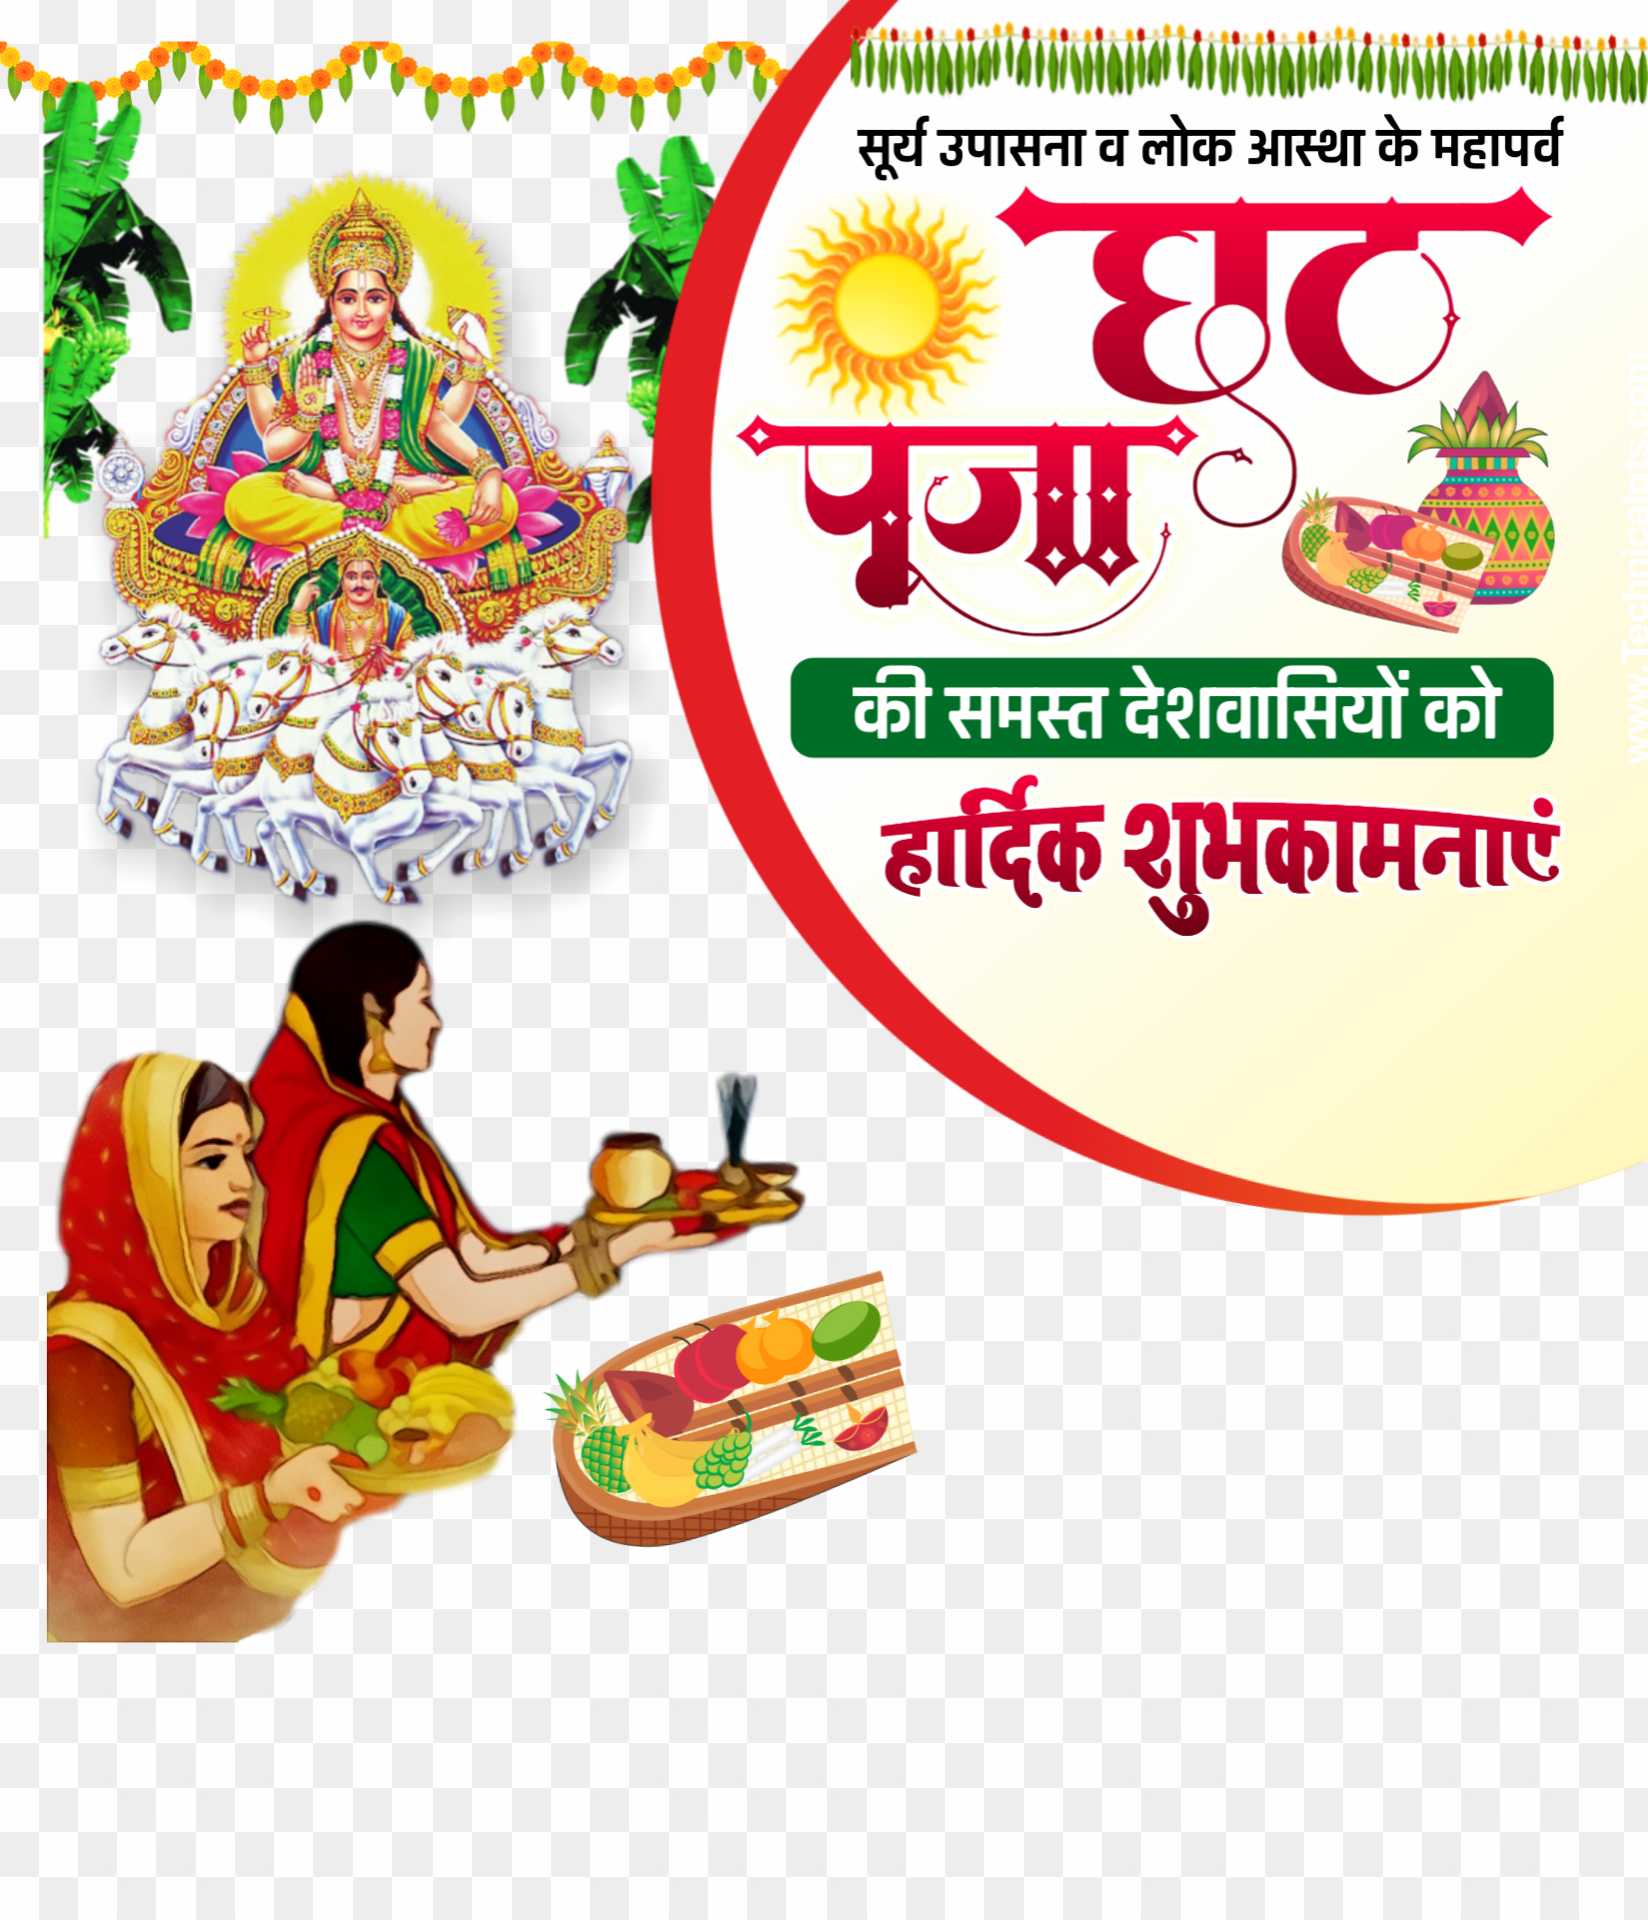 Chhath Puja 2023 wishes in Hindi messages quotes images whatsapp status  chhathi maiya ki shubhkamnaye - Astrology in Hindi - Chhath Puja 2023  wishes: लोक आस्था के महापर्व छठ में अस्ताचलगामी सूर्य